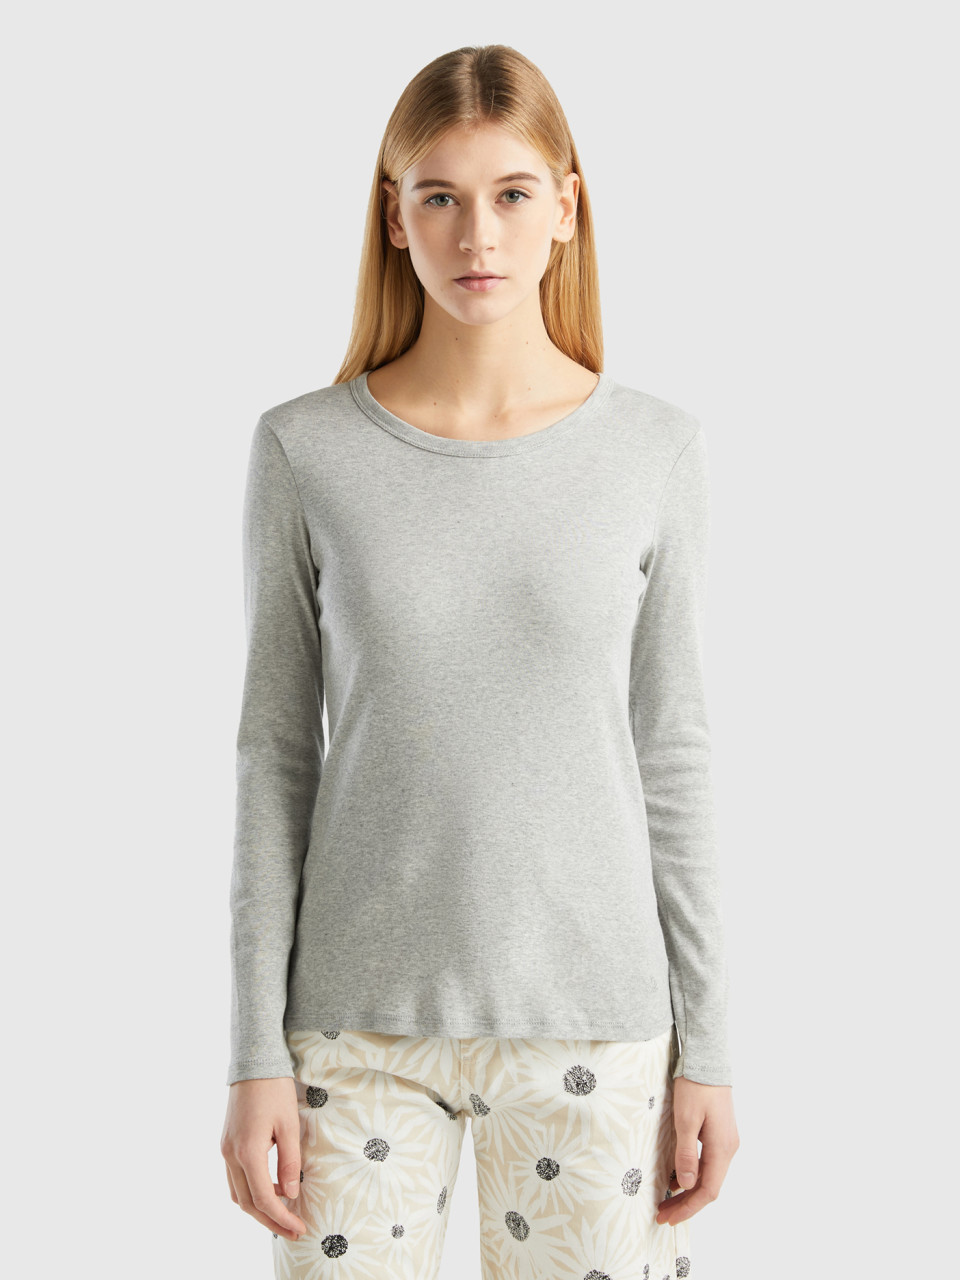 Benetton, Long Sleeve Pure Cotton T-shirt, Light Gray, Women